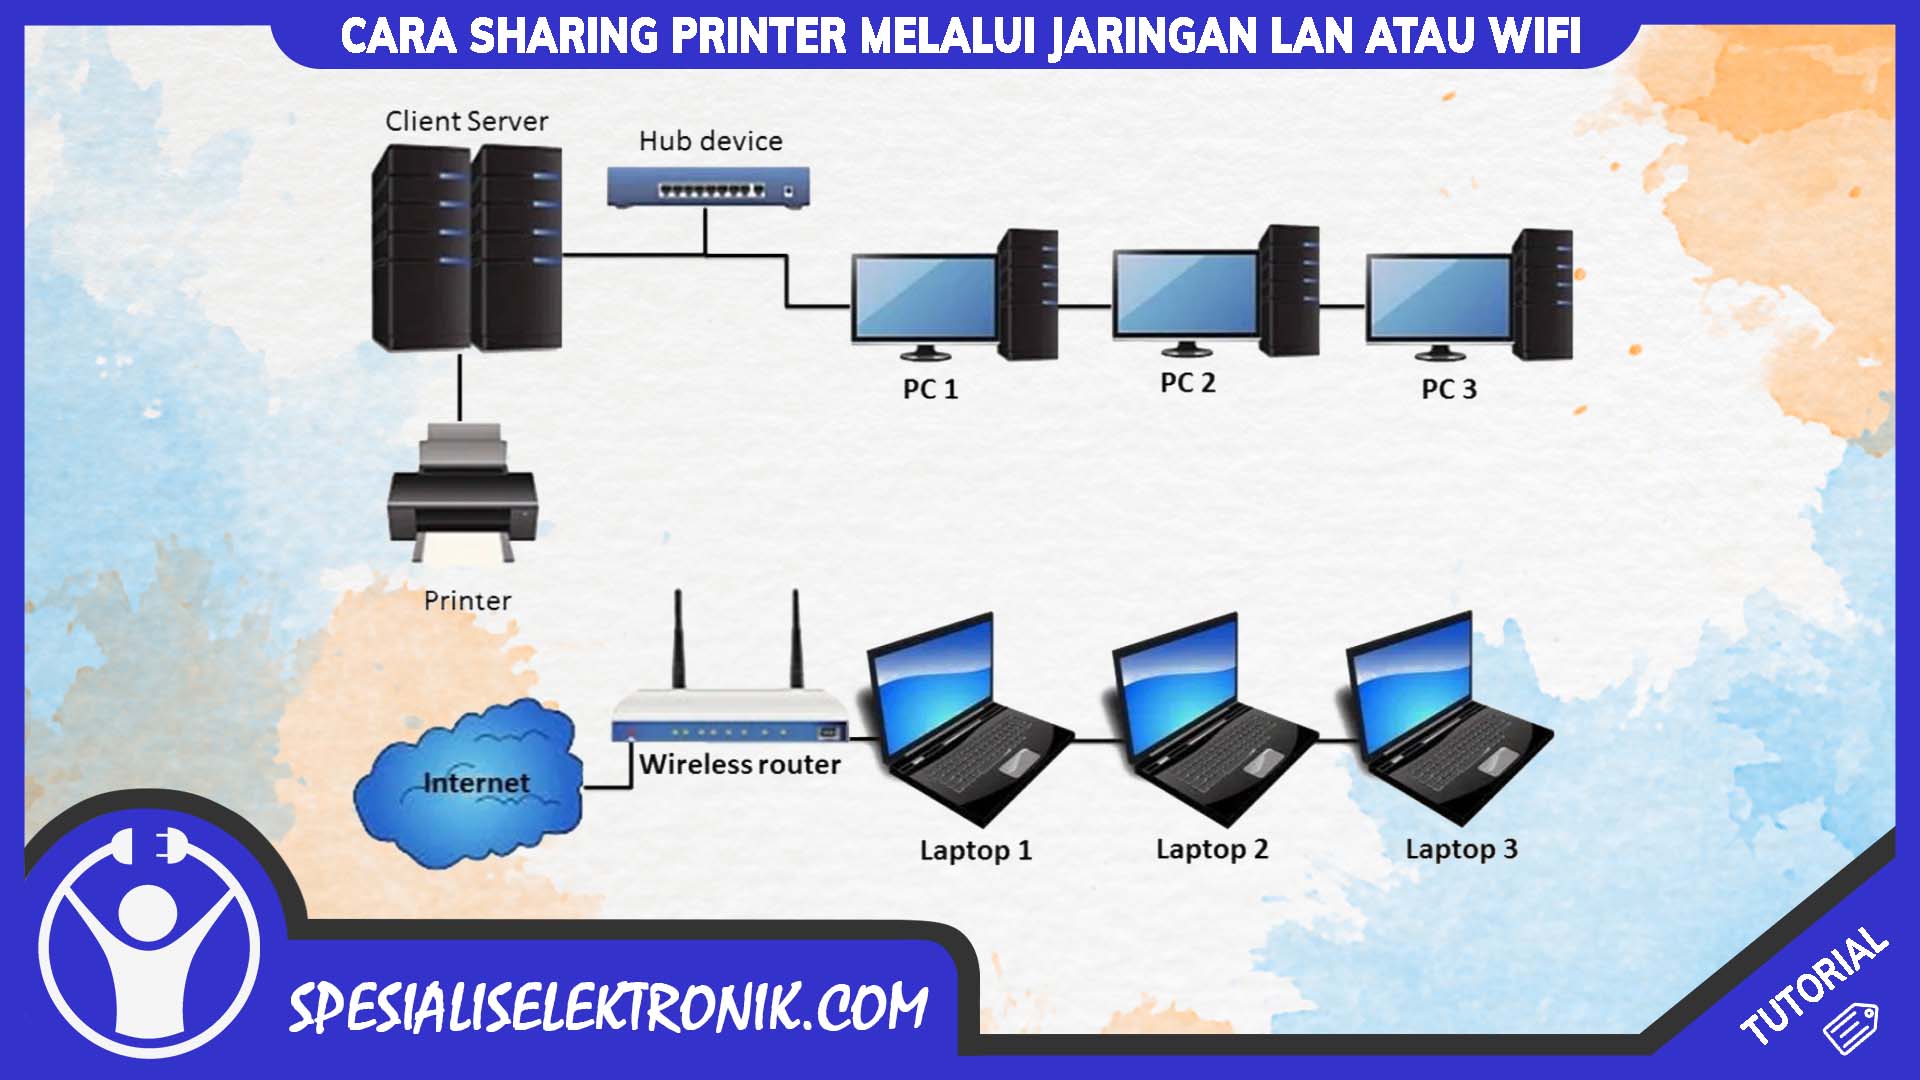 Cara Sharing Printer Melalui Jaringan LAN atau Wifi - Spesialis Elektronik